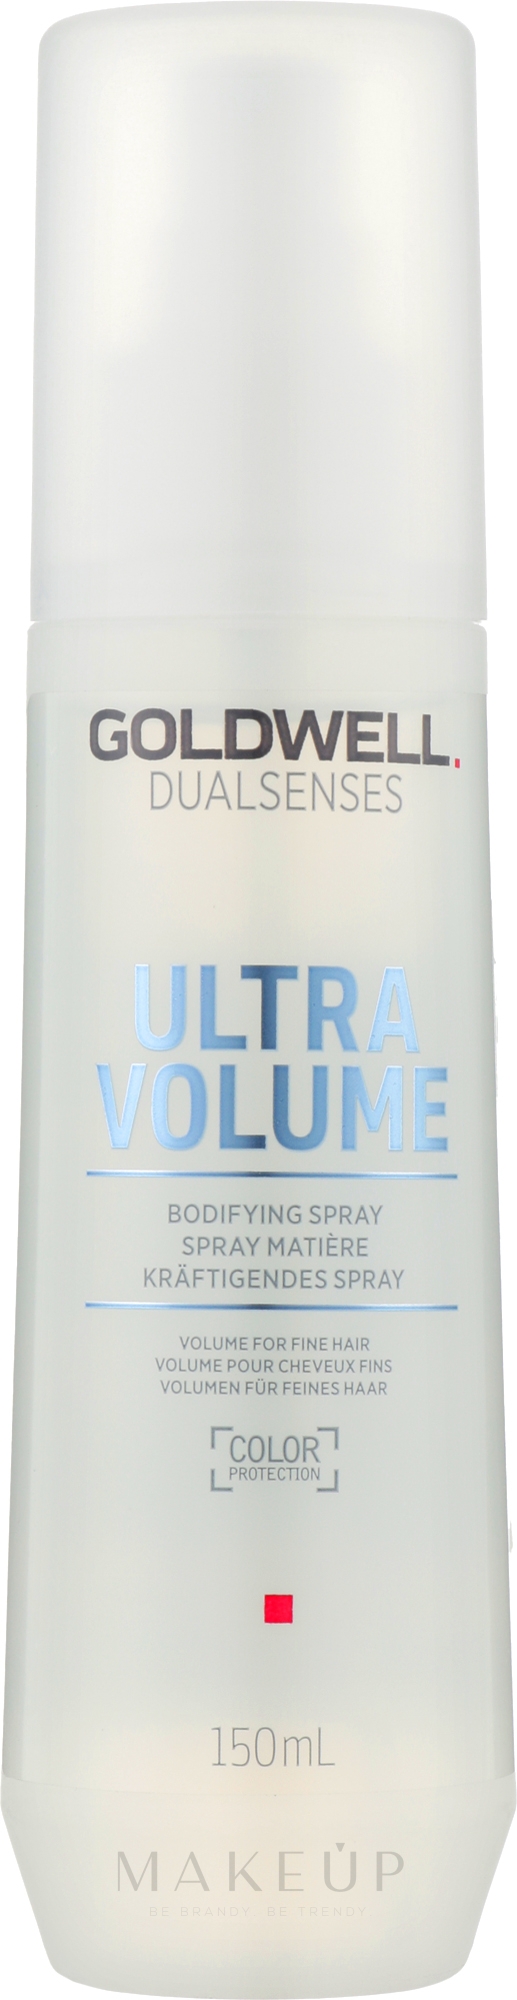 Volumen-Haarspray für feines Haar - Goldwell Dualsenses Ultra Volume Bodifying Spray — Foto 150 ml